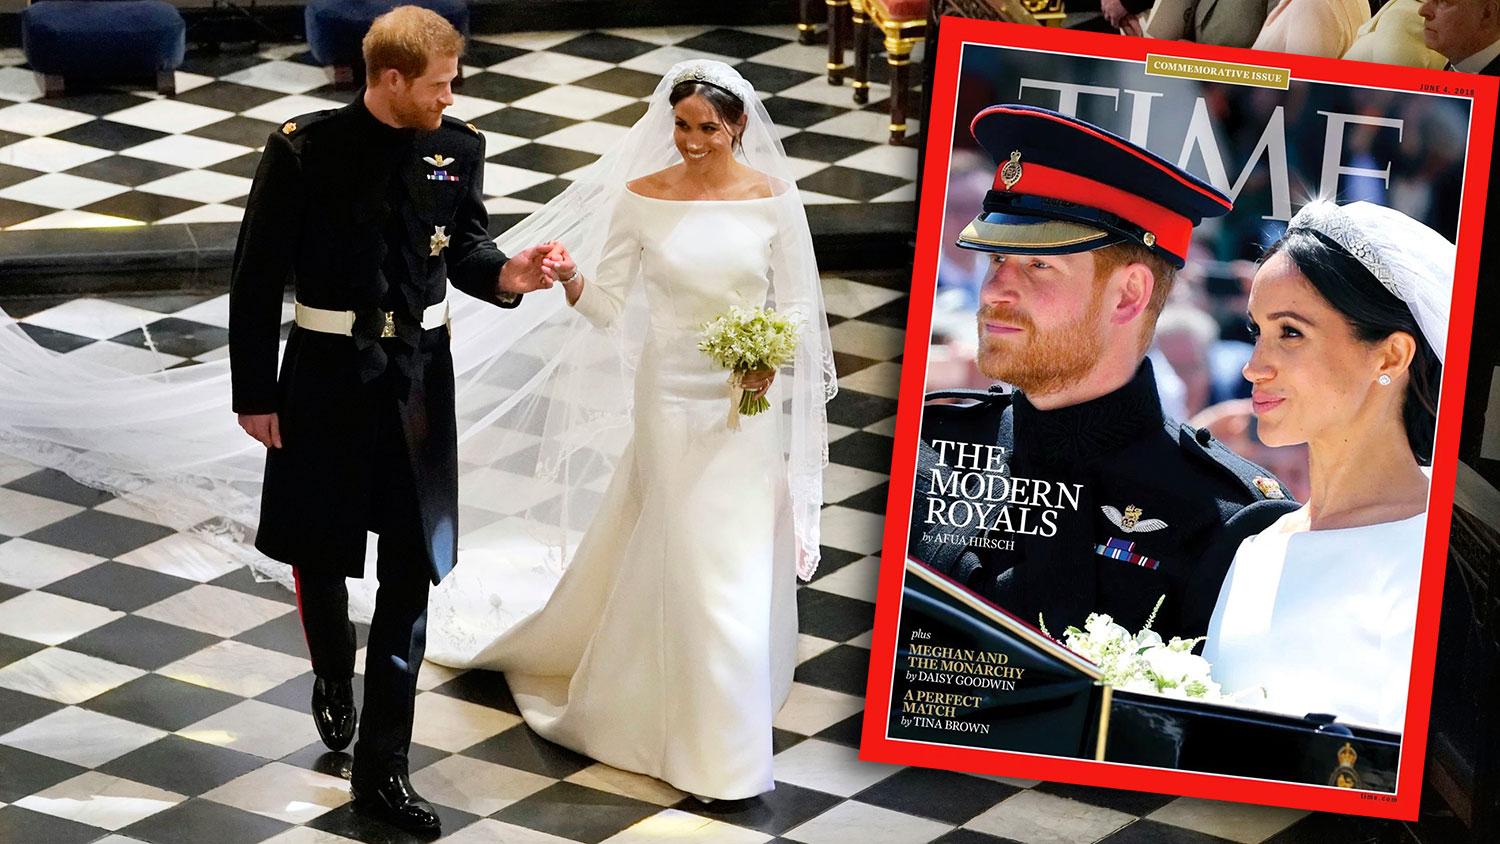  Time Magazine hade rubriken ”The modern royals” på förstasidan.